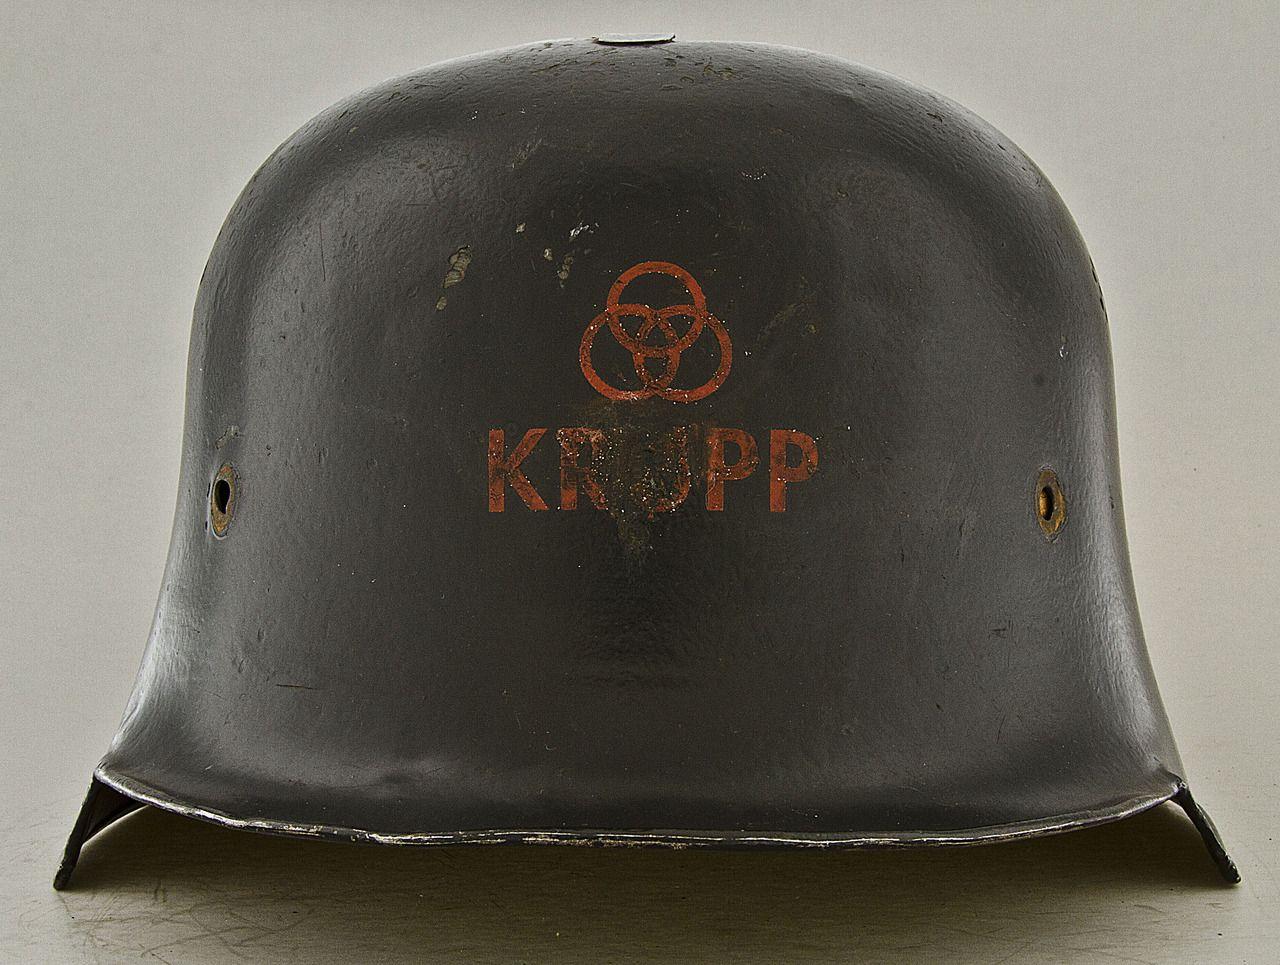 Krupp Logo - Krupp factory safety helmet, Germany 1930's [1280x965]